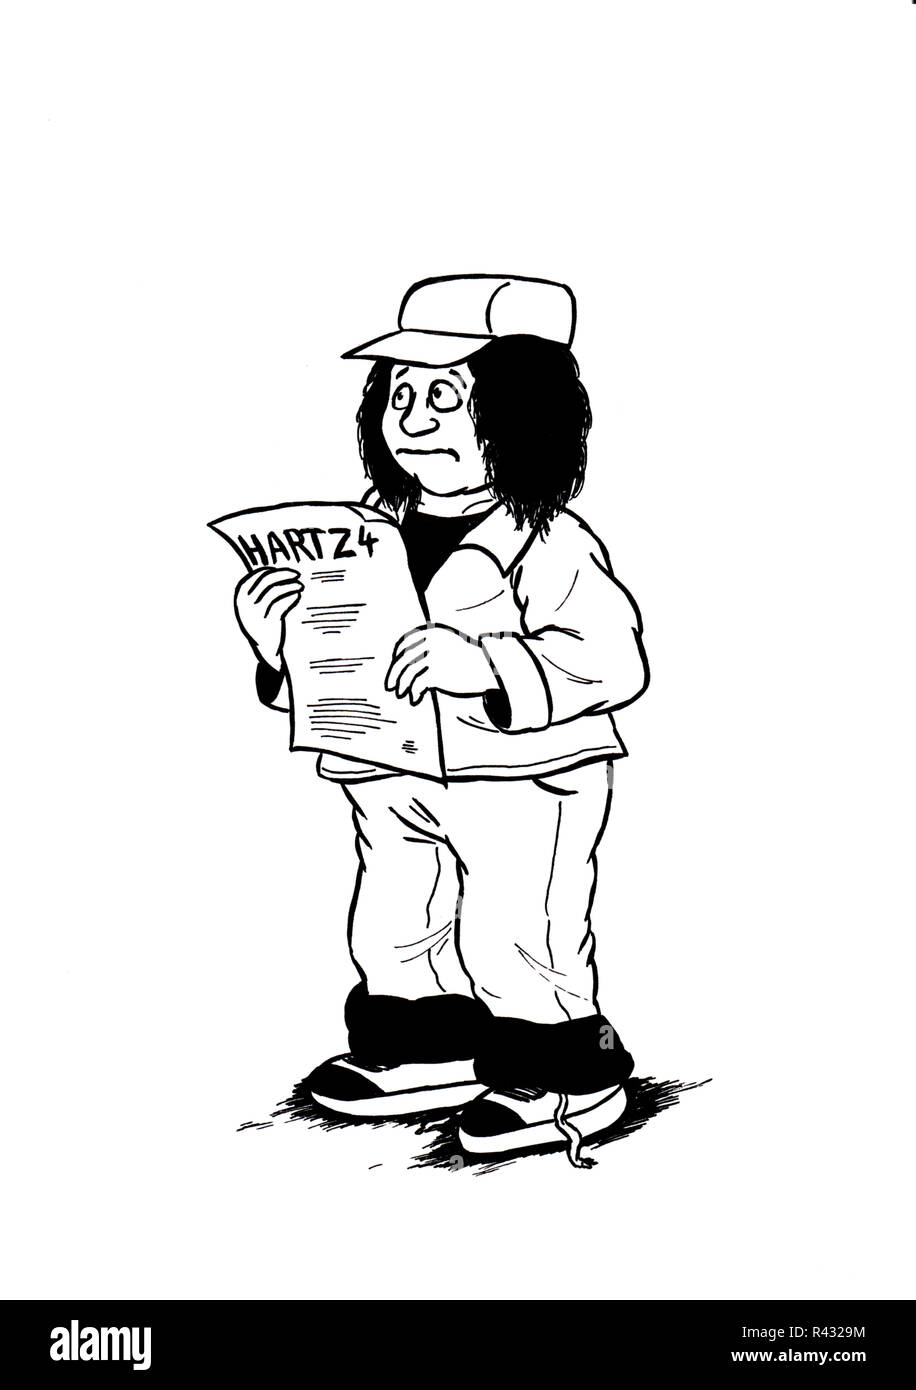 man with hartz 4 script in his hands Stock Photo